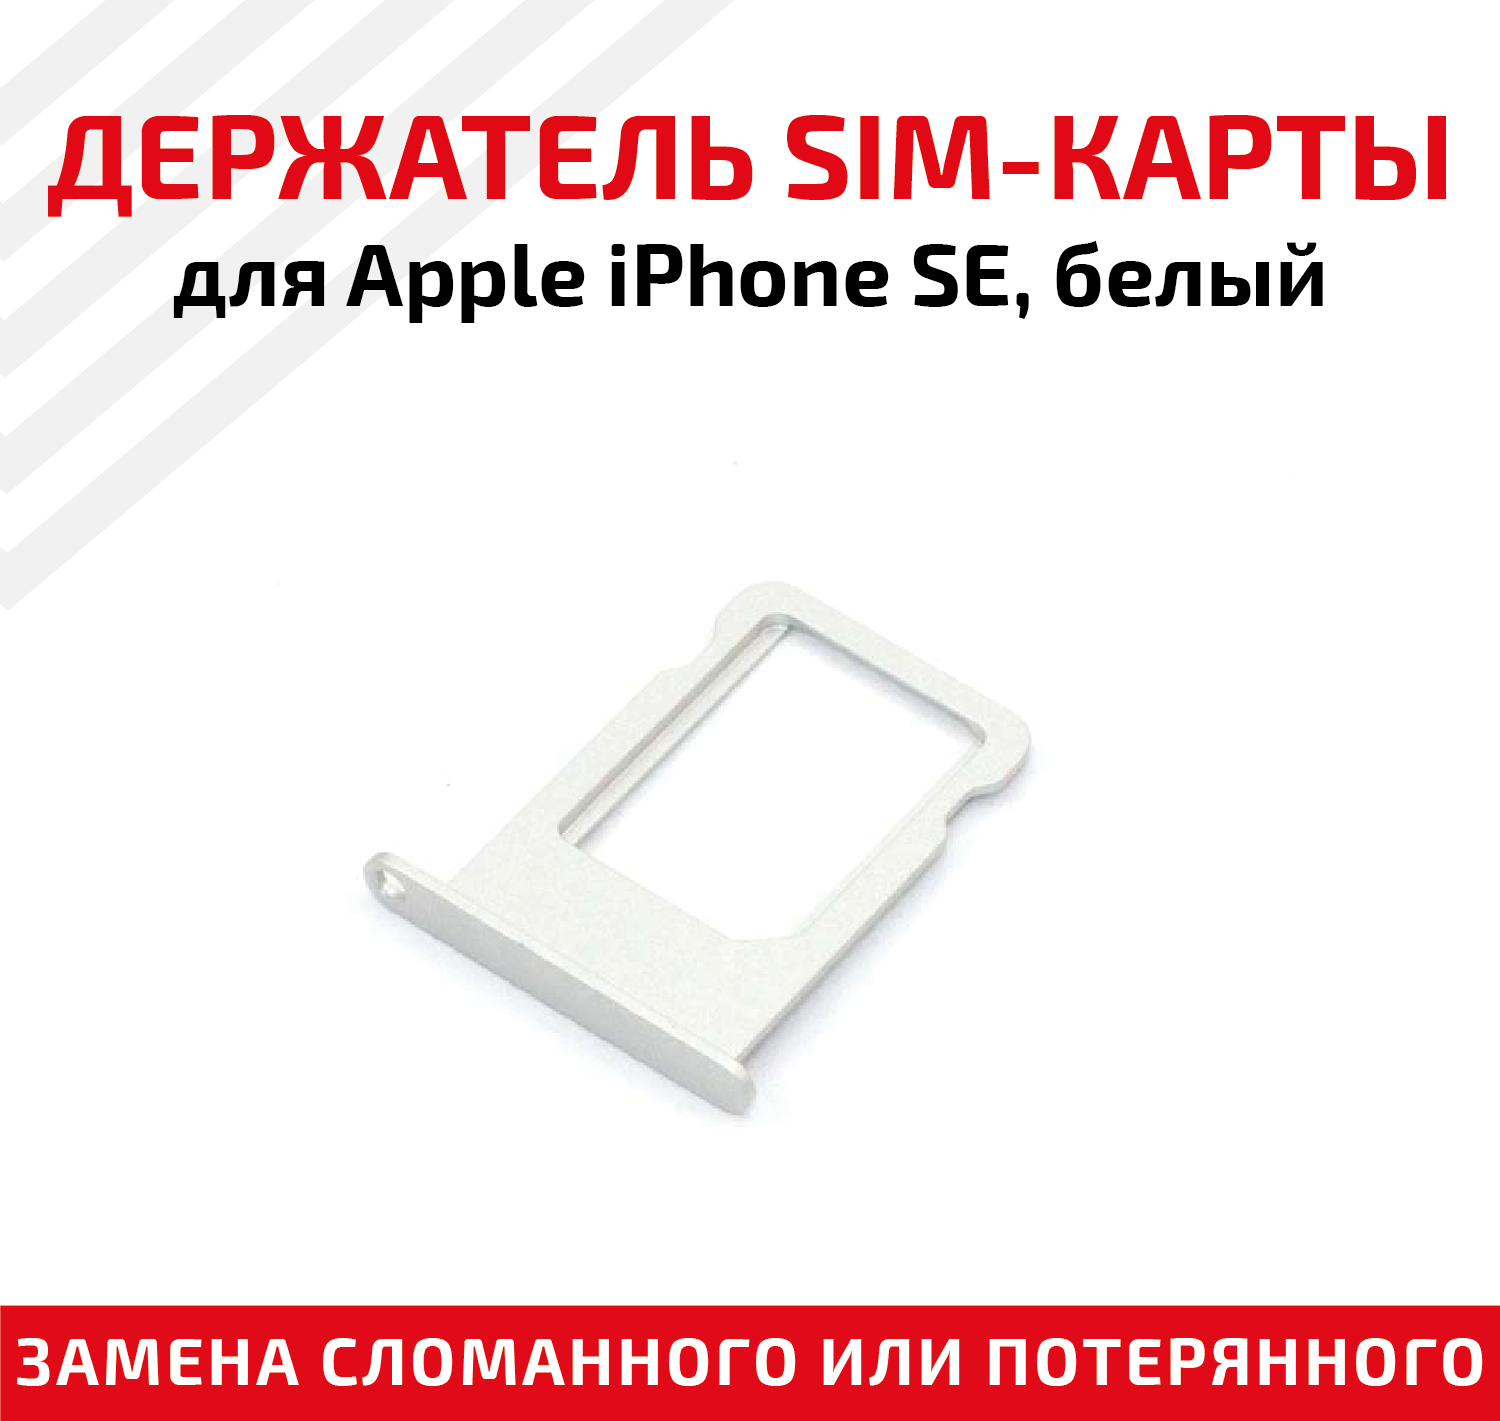 Лоток (держатель, контейнер, слот) SIM-карты для мобильного телефона (смартфона) Apple iPhone SE, белый